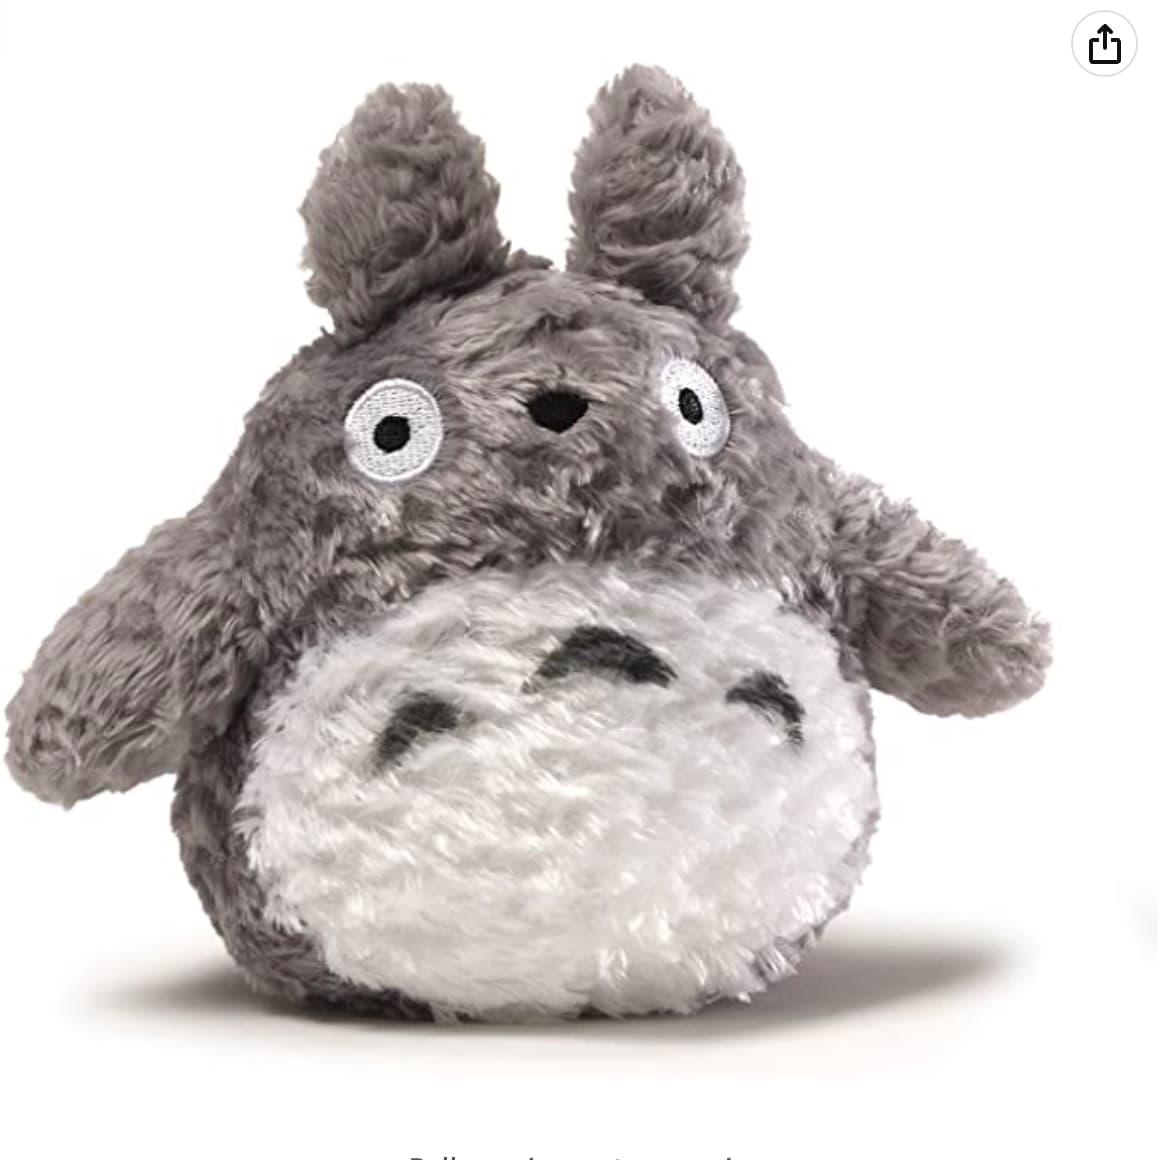 Fluffy. A stuffed animal.